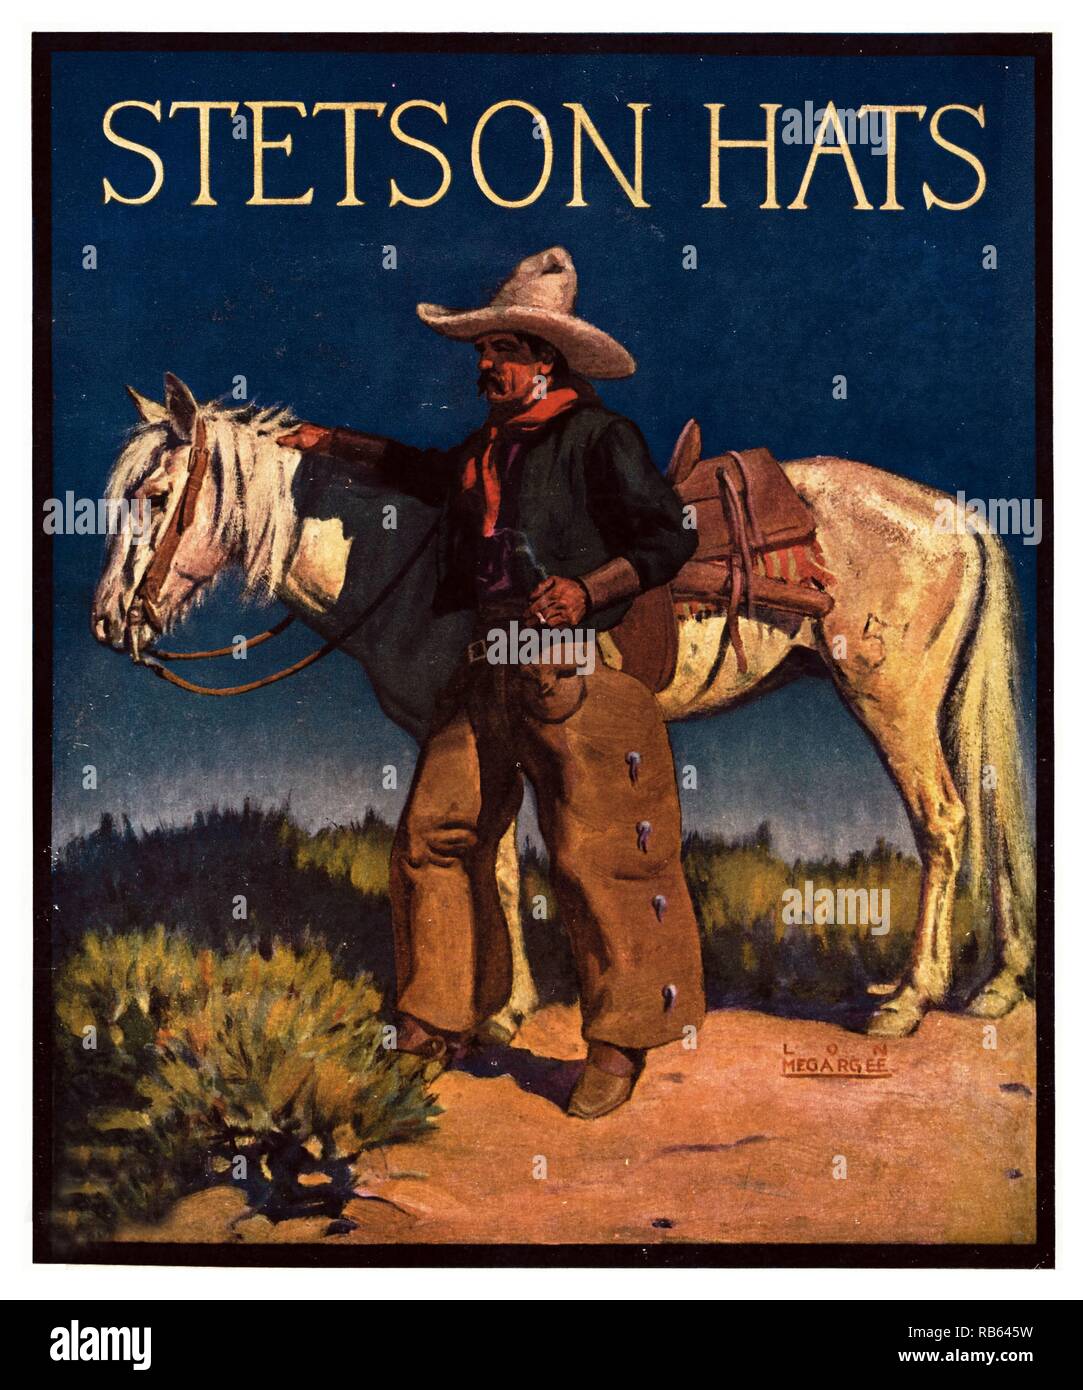 Chapeau Stetson, mieux connu dans le monde entier. Entreprise a commencé en 1865 par John B Stetson. Poster des images comme ce cow-boy avec son cheval pris en charge le mythe de l'Ouest, et reflètent les valeurs des lecteurs de romans de l'Ouest et les spectateurs de films occidentaux venus à attendre. Banque D'Images